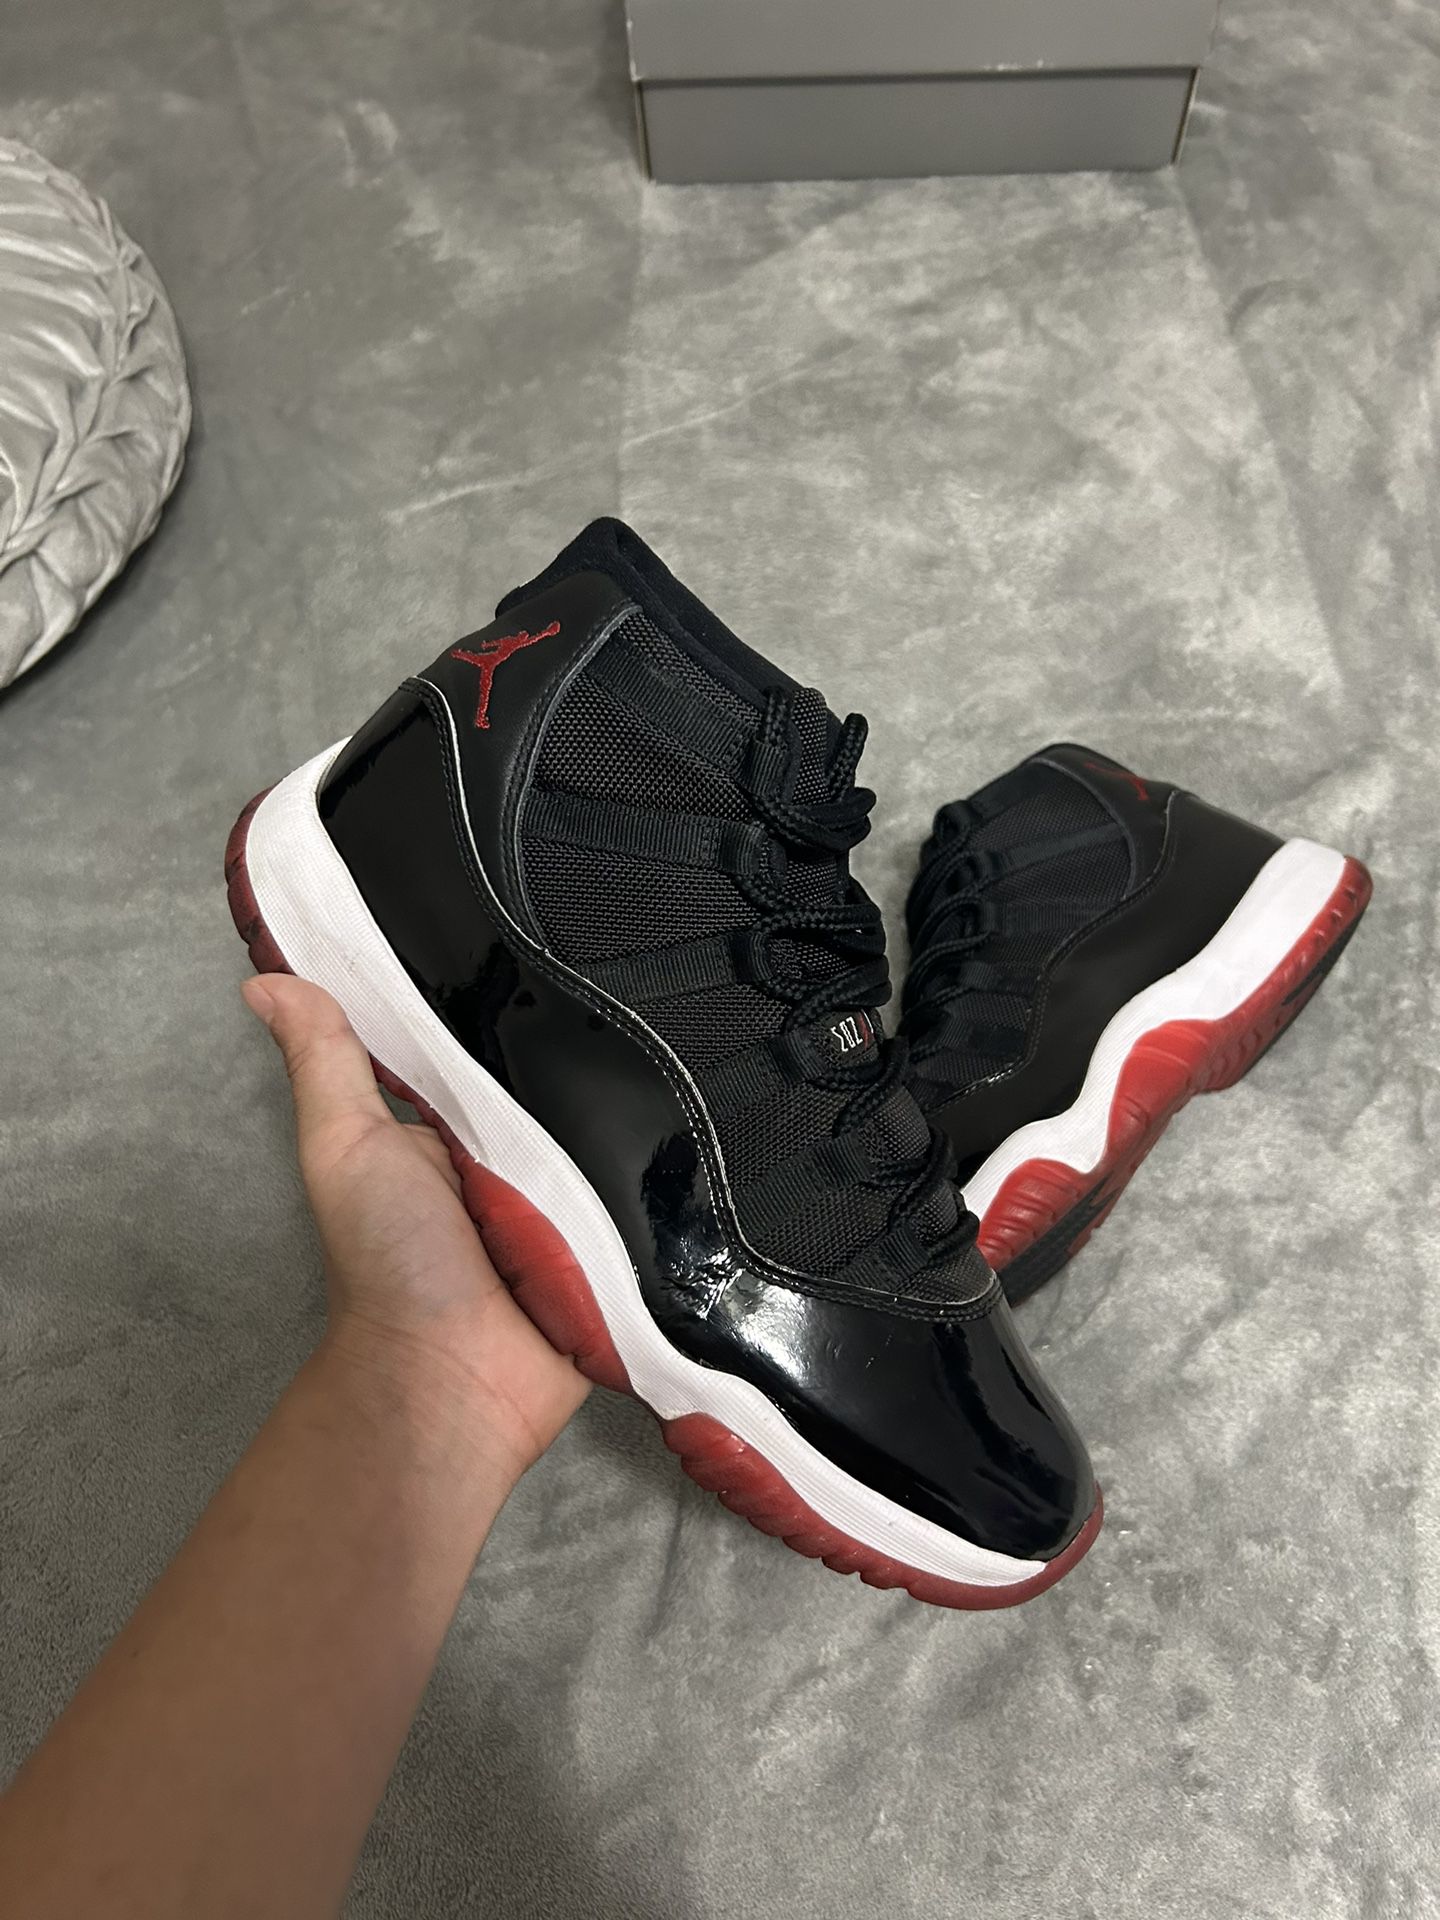 Jordan 11 size 8